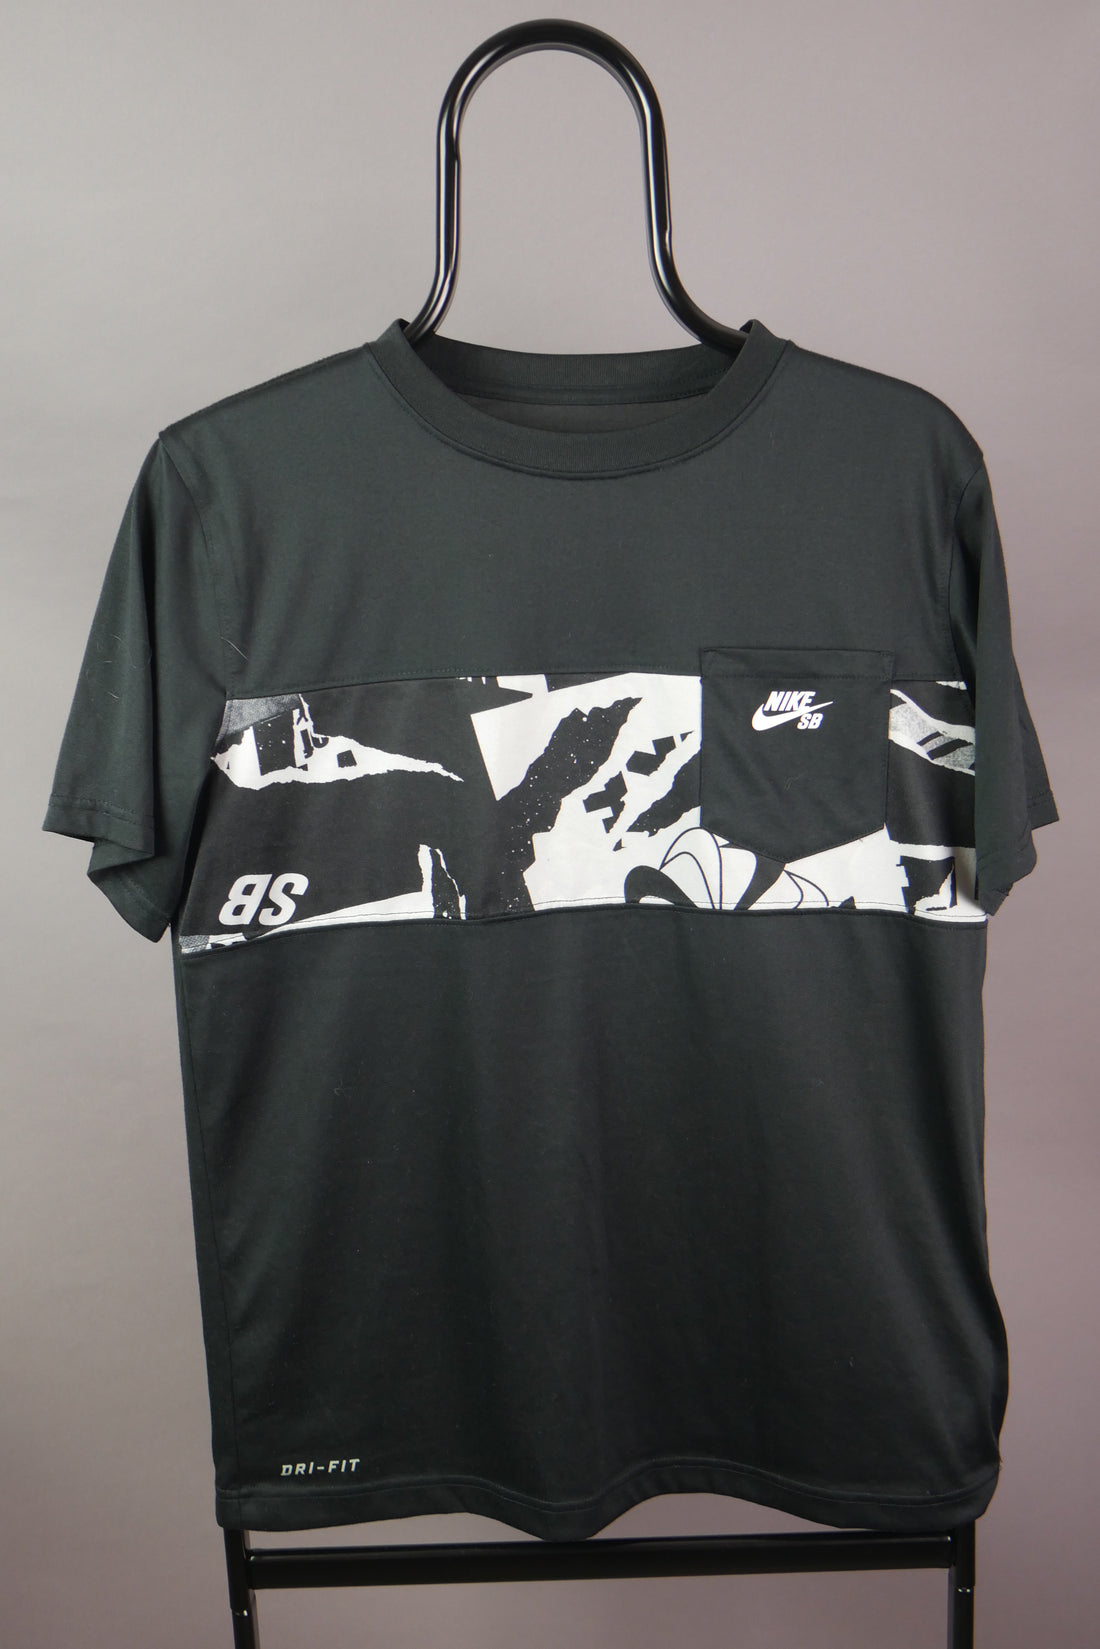 The Nike SB T-Shirt (S)